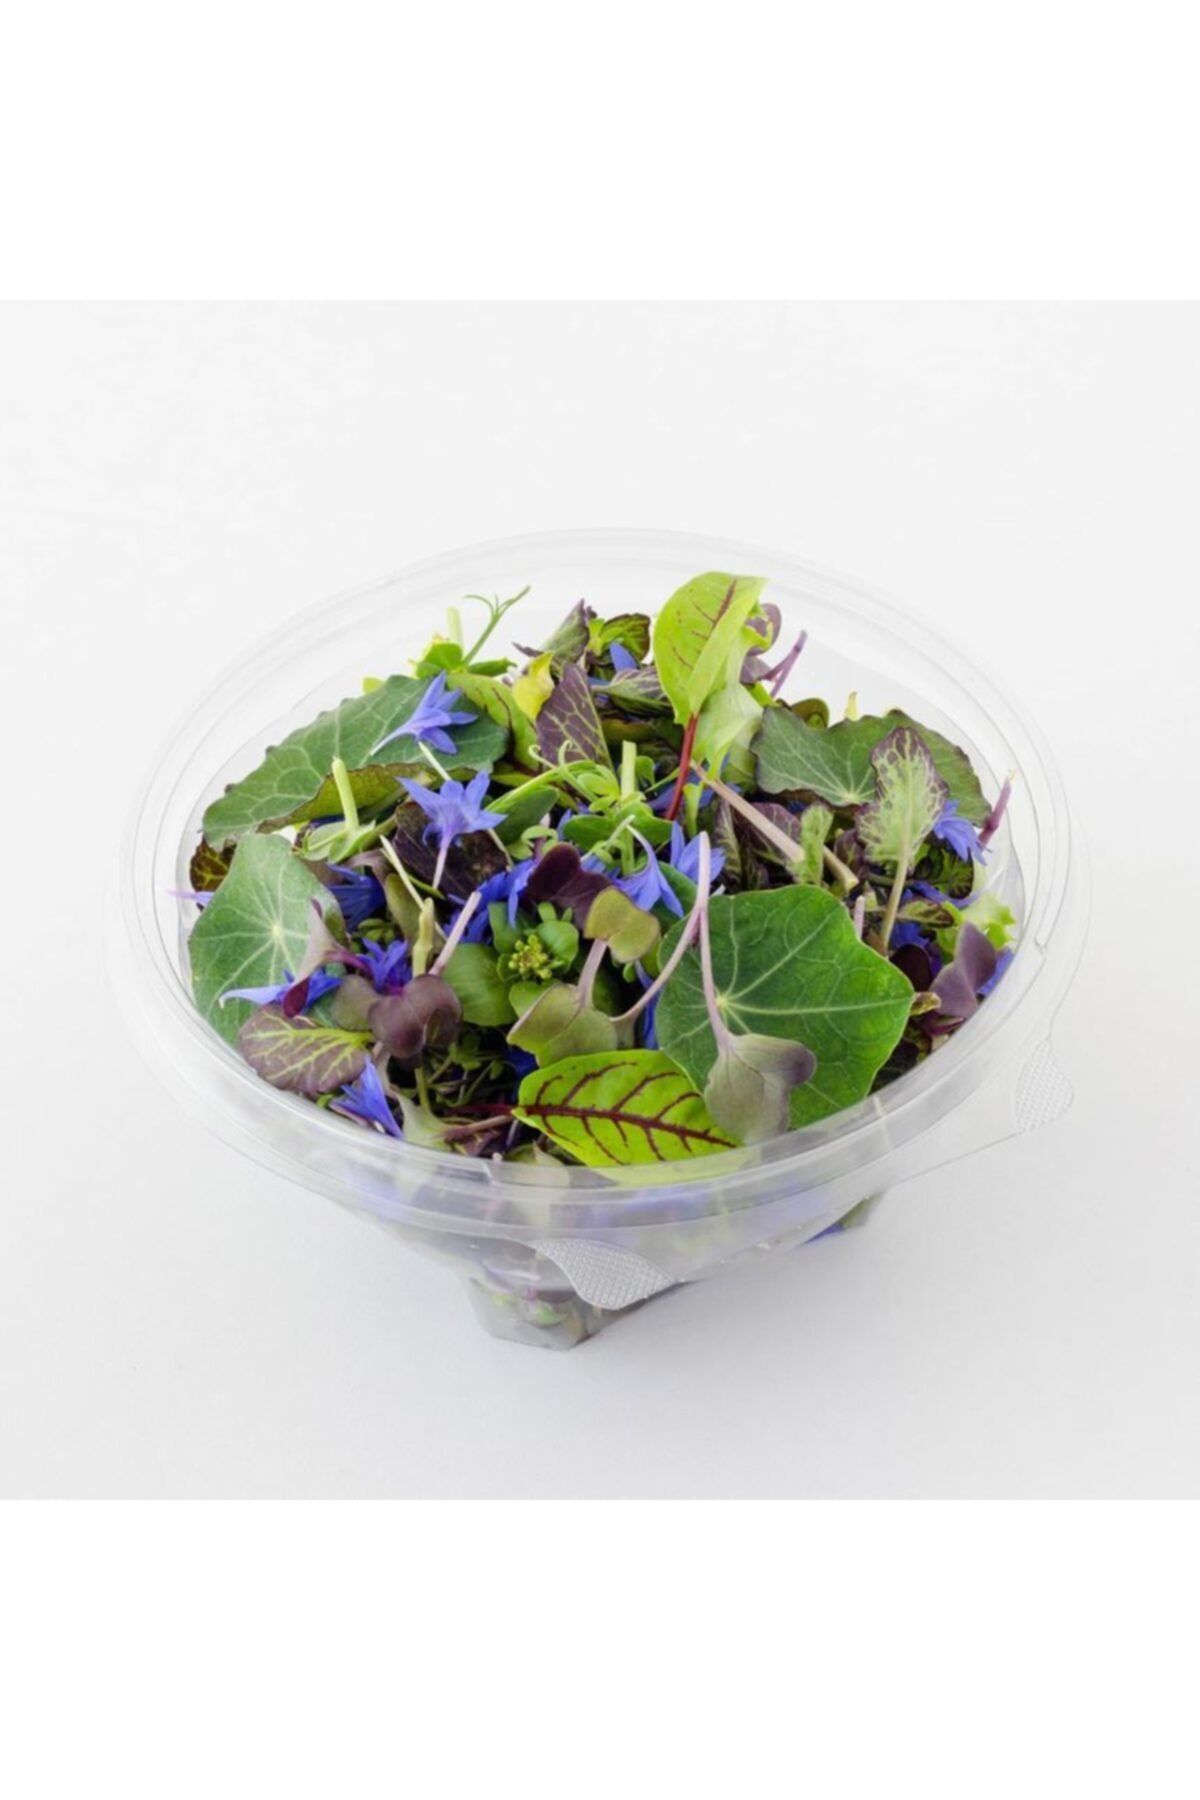 Mimi Çiftliği Yemeye Hazır Filiz Salatası - Yenileyici Salata